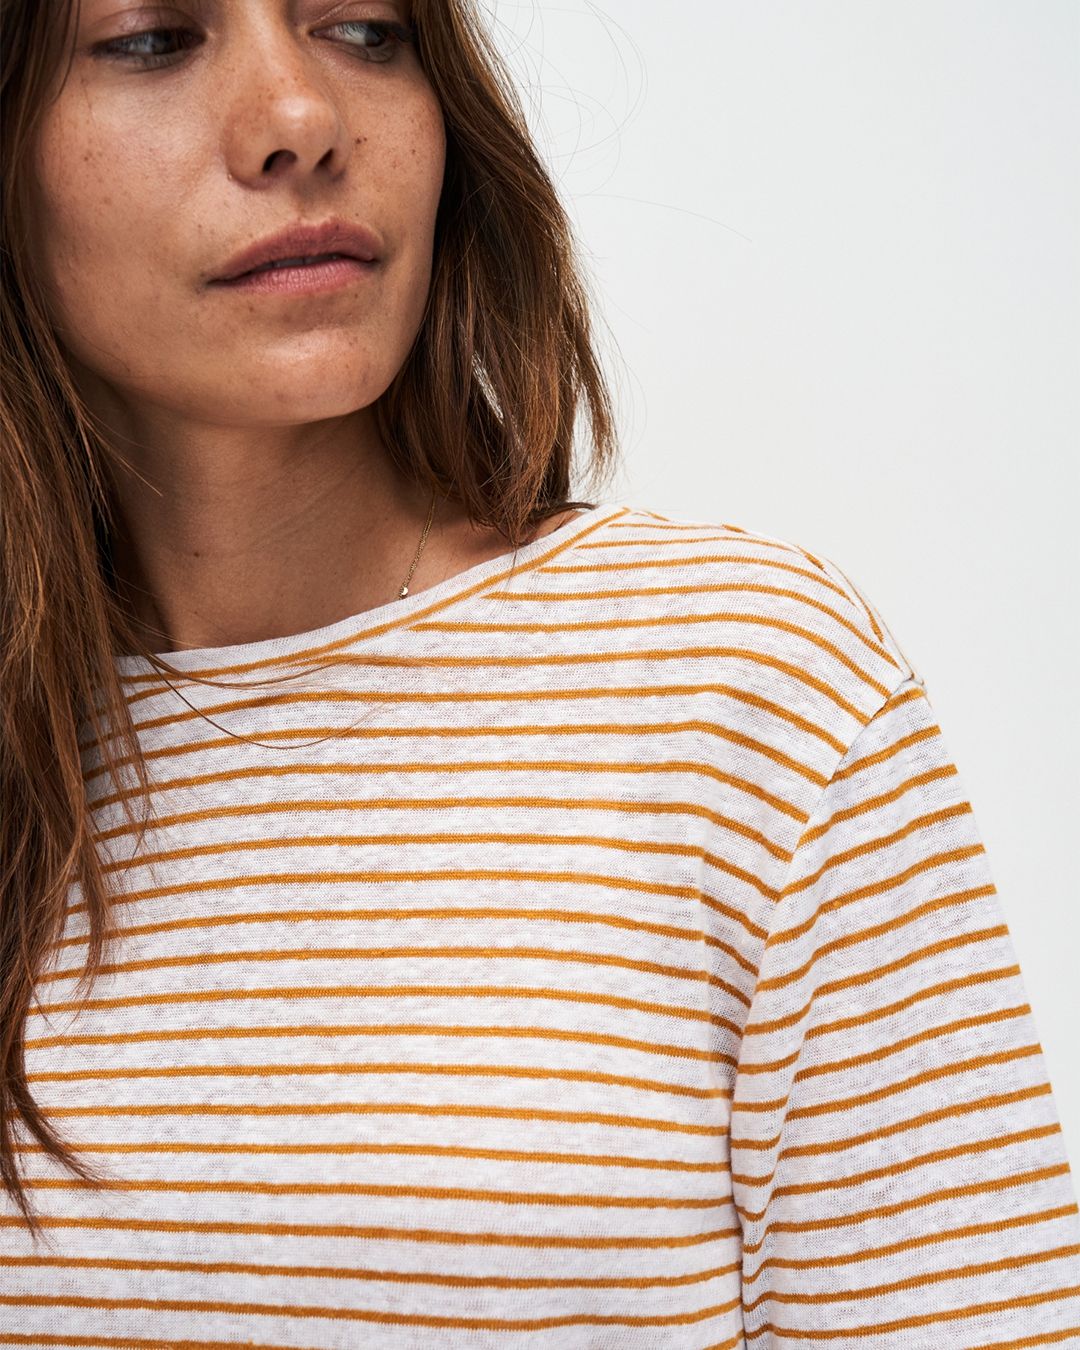 Kuyichi Olivia Striped T-Shirt Bio-Baumwolle und Leinen